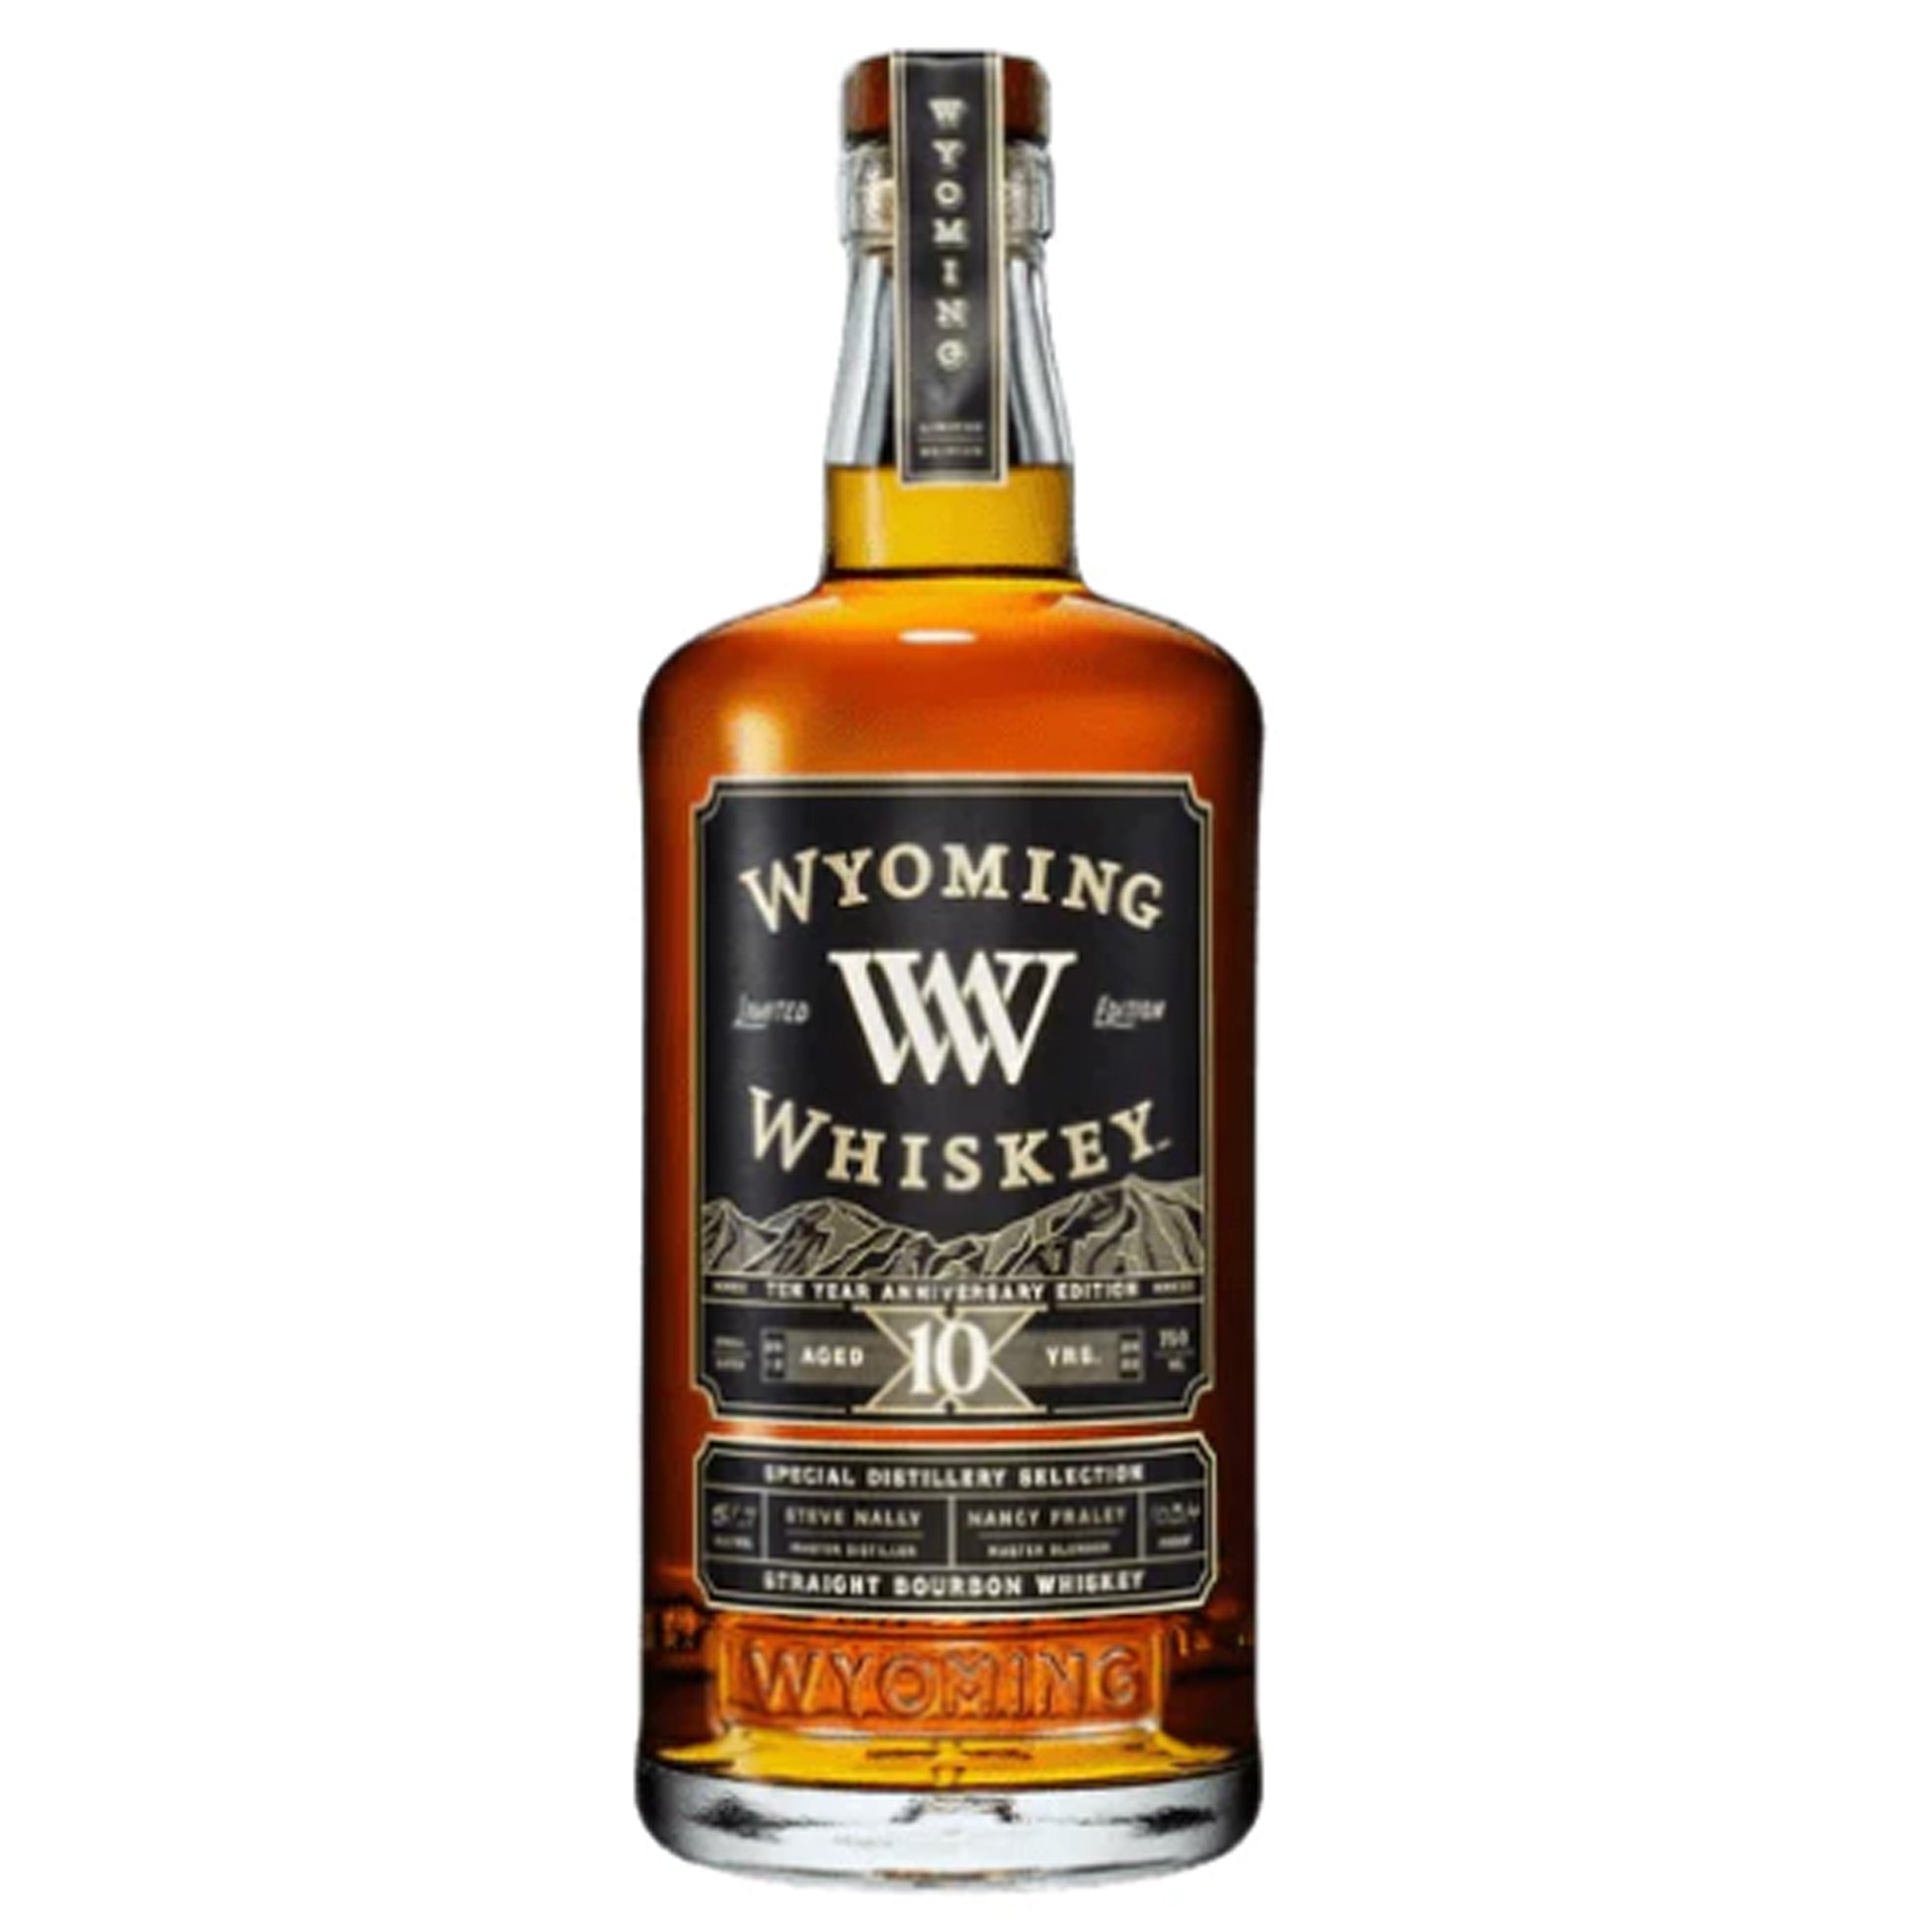 Wyoming Whiskey 10 Years Anniversary Edition Straight Bourbon Whiskey